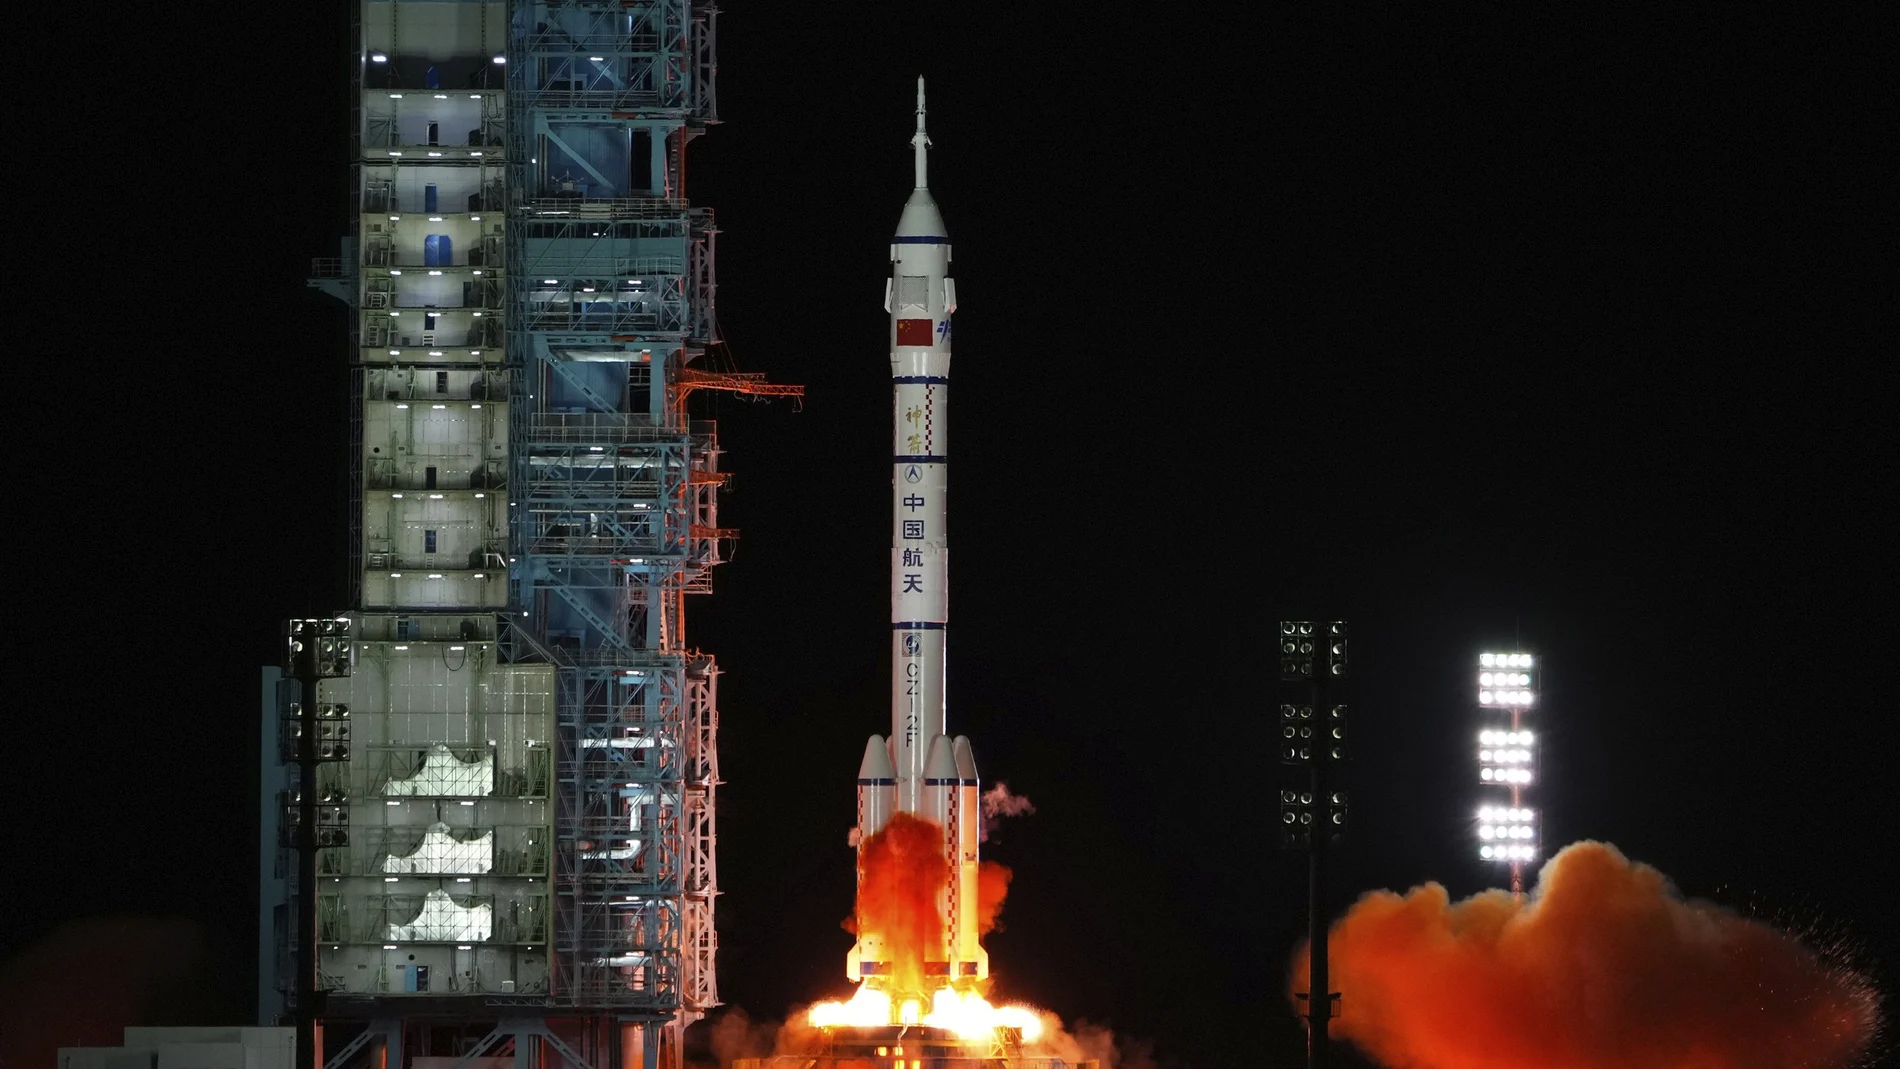 Se espera que establezcan un nuevo récord de duración entre las misiones espaciales tripuladas de China